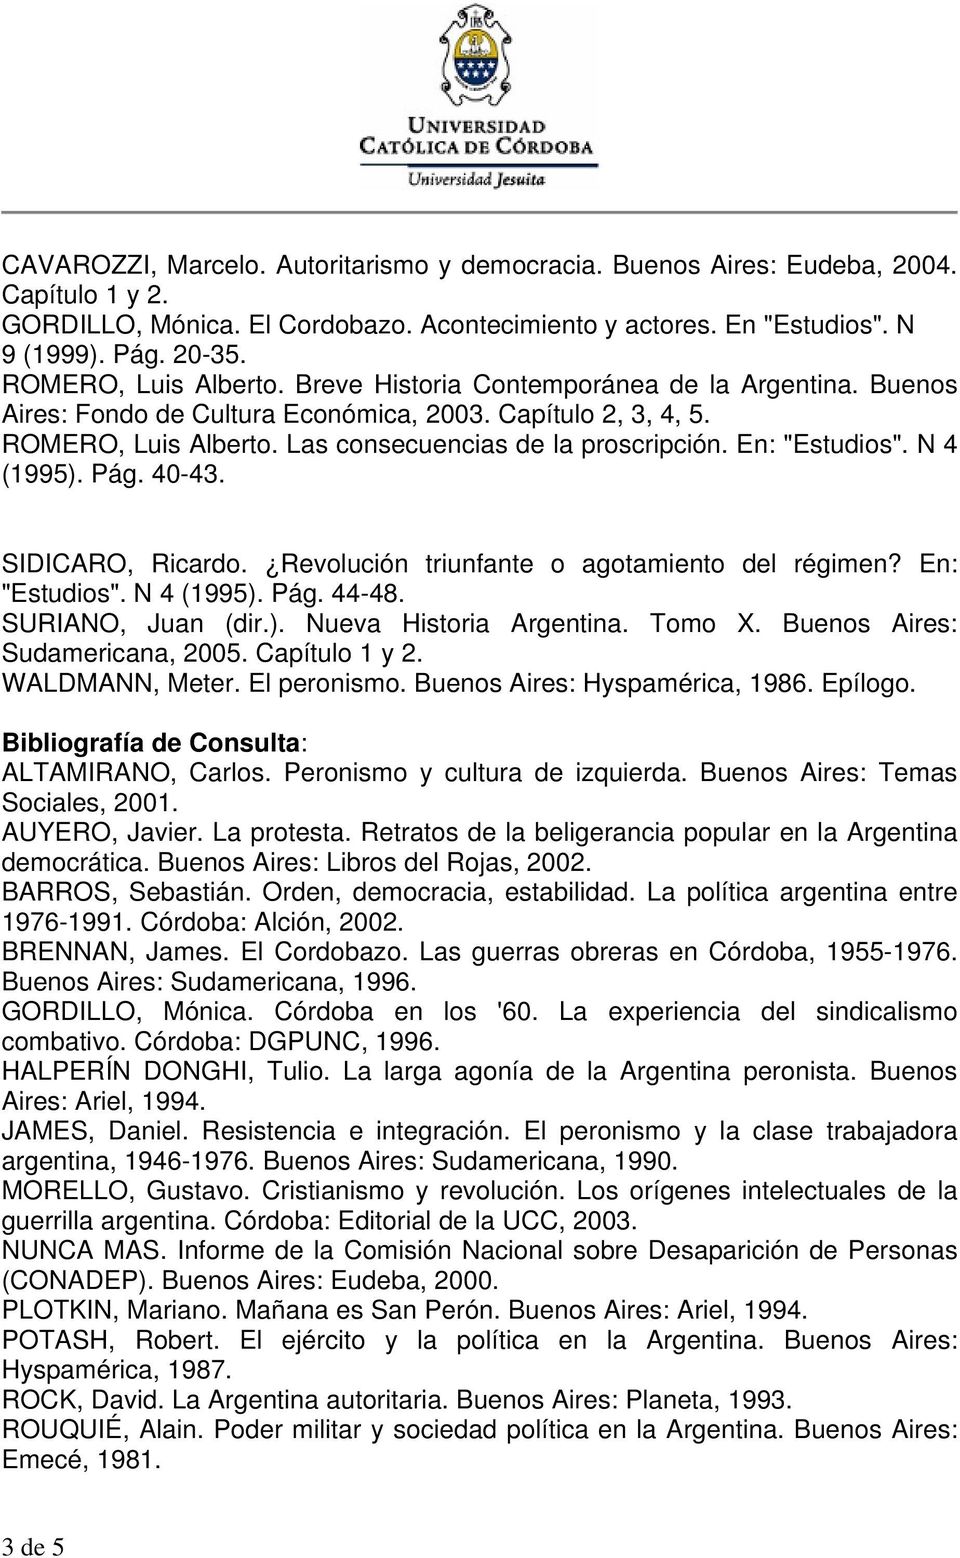 En: "Estudios". N 4 (1995). Pág. 40-43. SIDICARO, Ricardo. Revolución triunfante o agotamiento del régimen? En: "Estudios". N 4 (1995). Pág. 44-48. SURIANO, Juan (dir.). Nueva Historia Argentina.